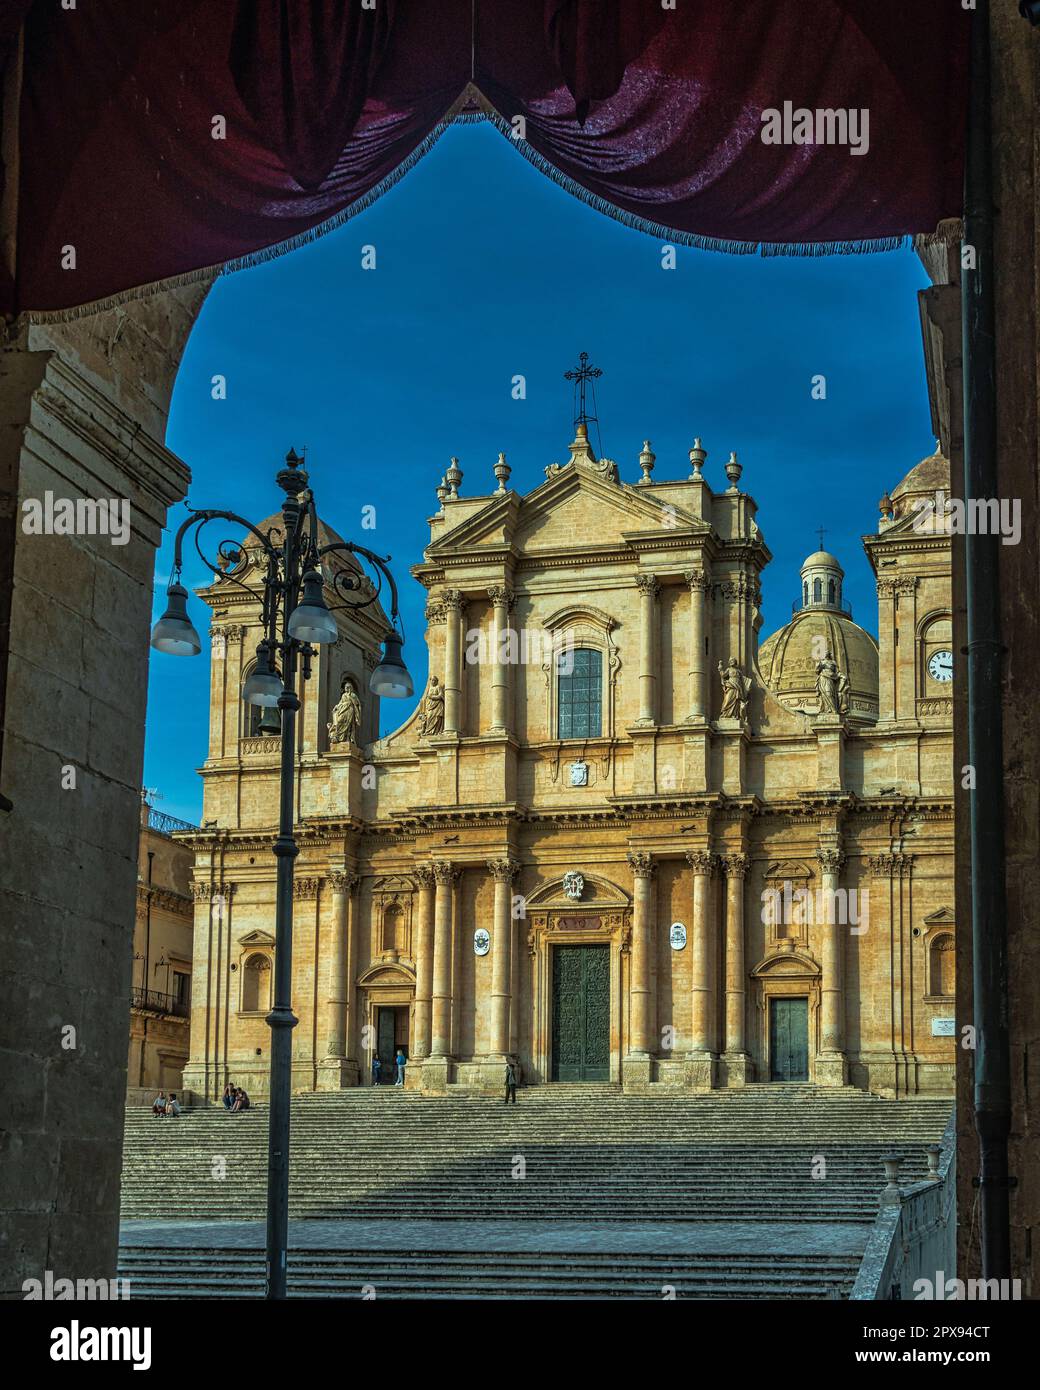 La façade de la cathédrale de San Nicolò, restaurée au 18th siècle dans le style baroque sicilien avec un dôme néoclassique. Noto, Sicile Banque D'Images